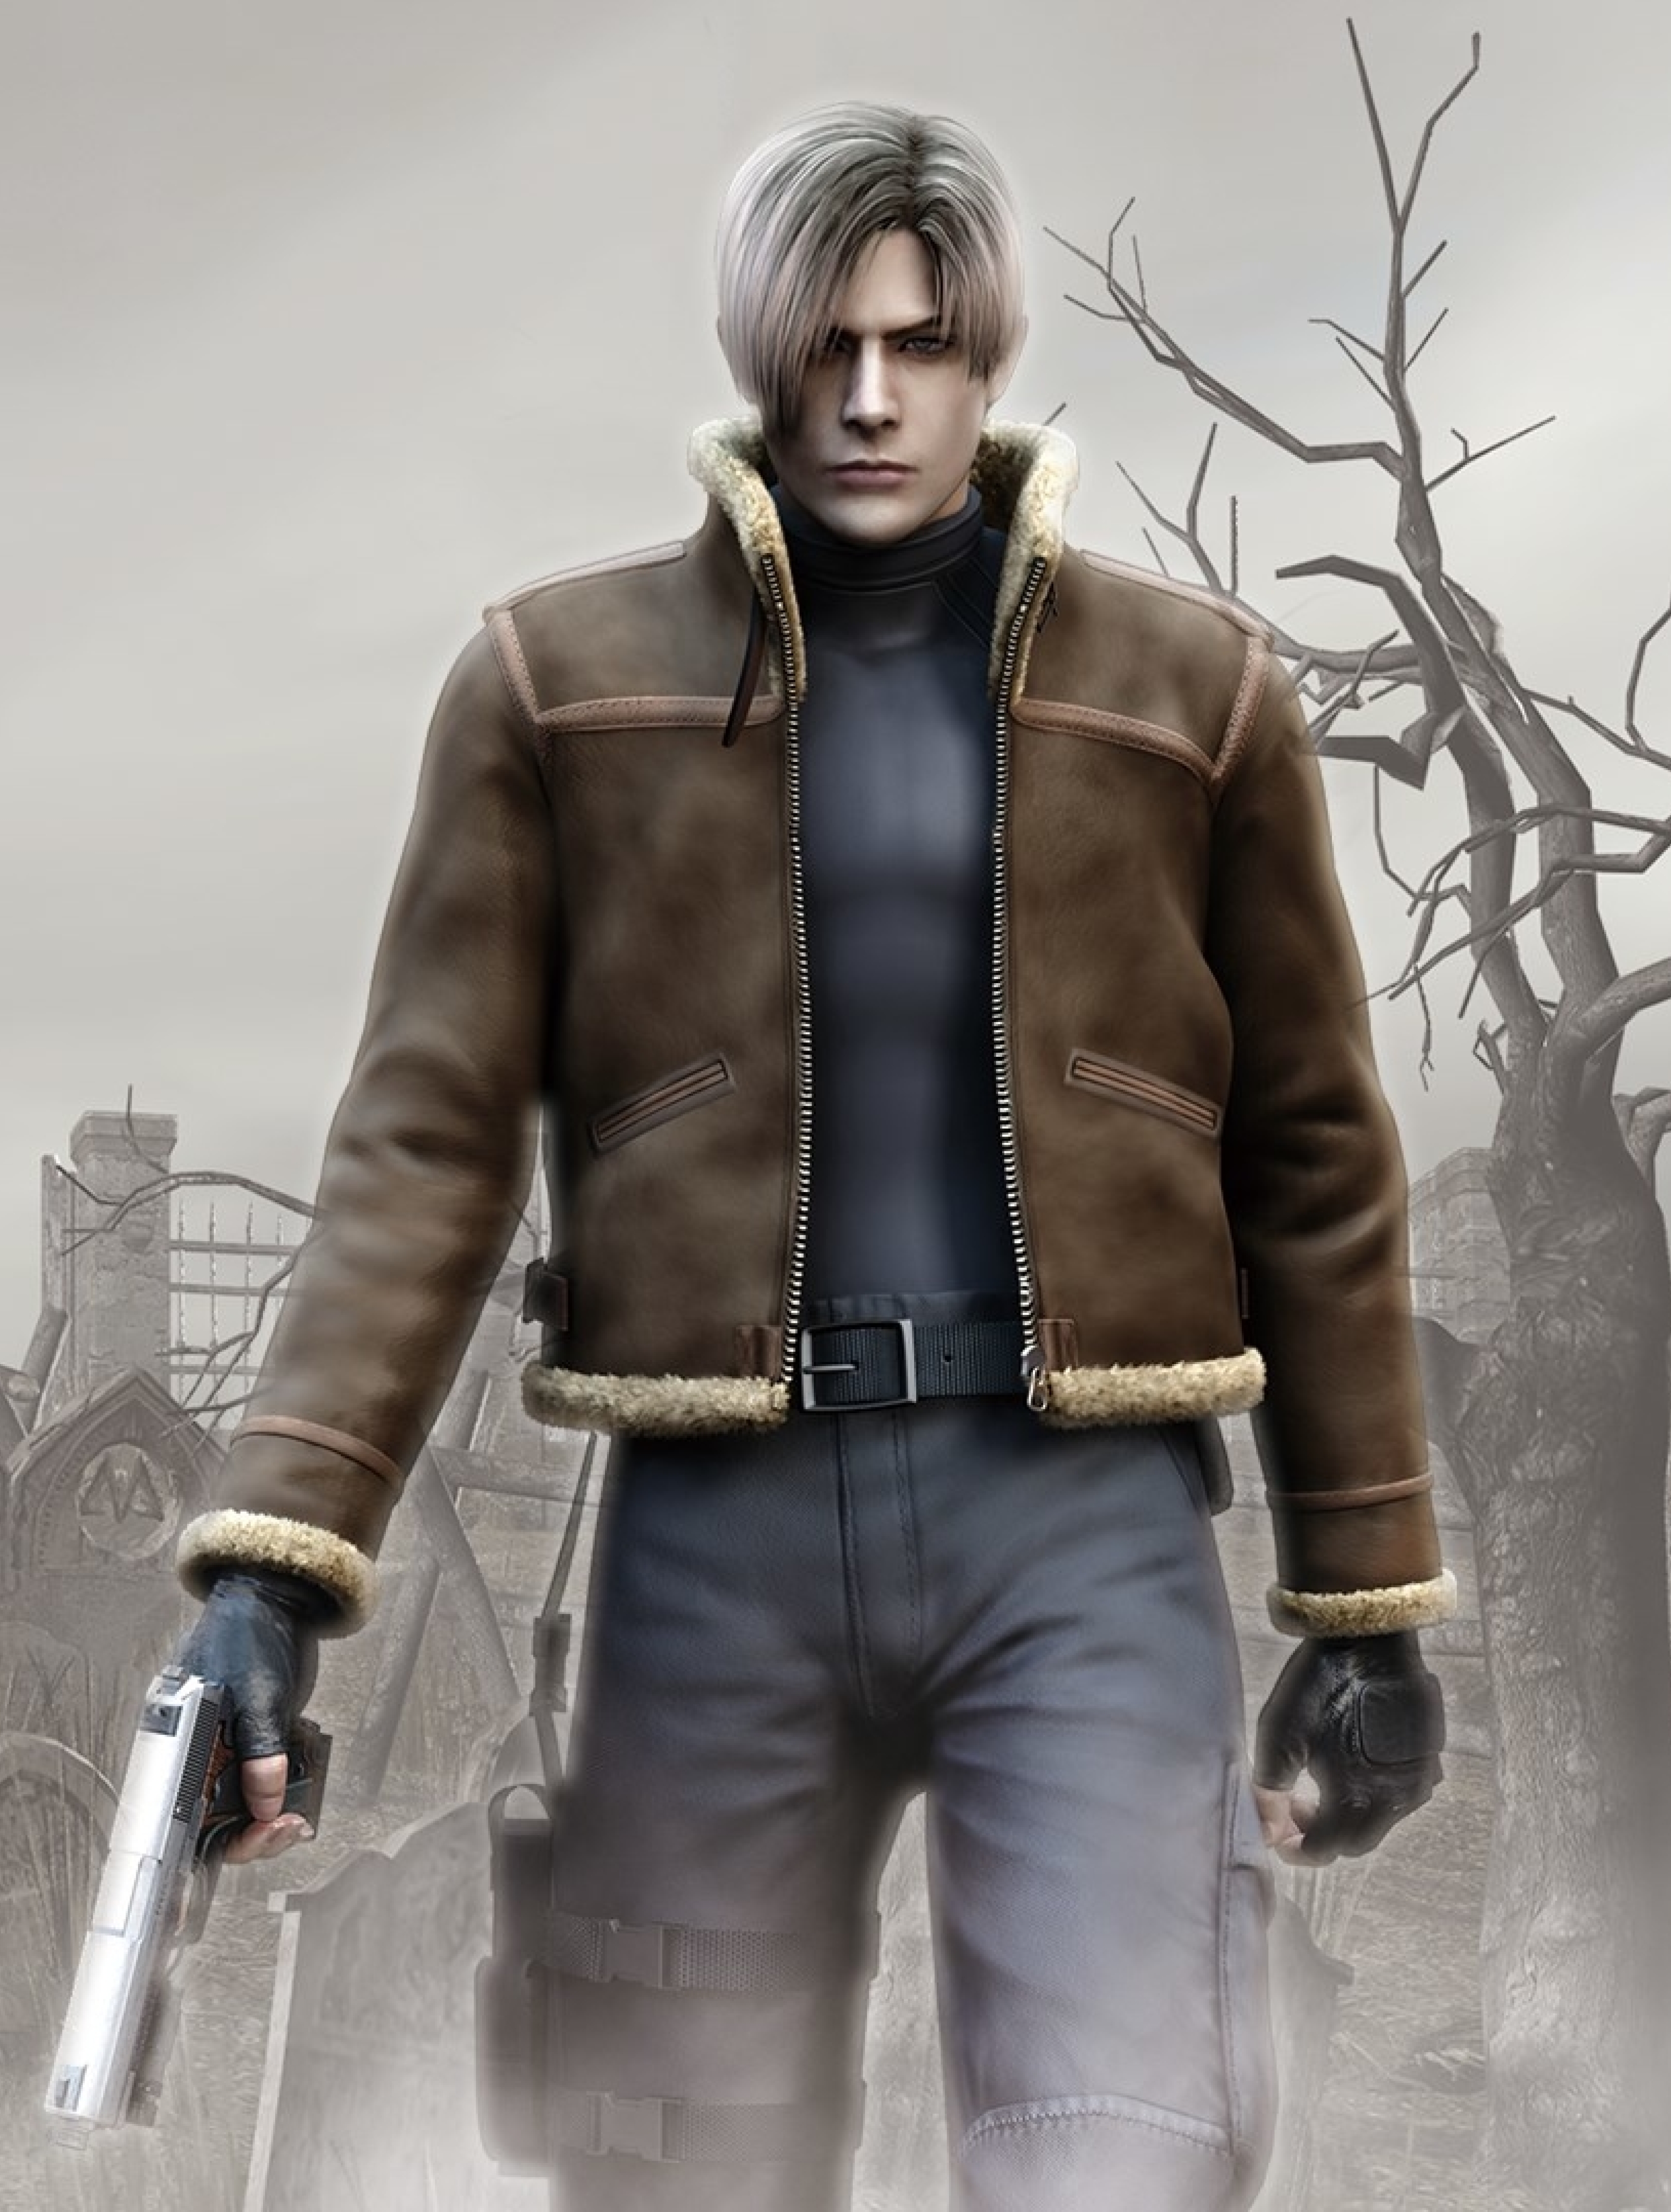 𝐋𝐞𝐨𝐧 𝐒 𝐊𝐞𝐧𝐧𝐞𝐝𝐲 𝐖𝐚𝐥𝐥𝐩𝐚𝐩𝐞𝐫  Resident evil Leon scott  kennedy Resident evil franchise